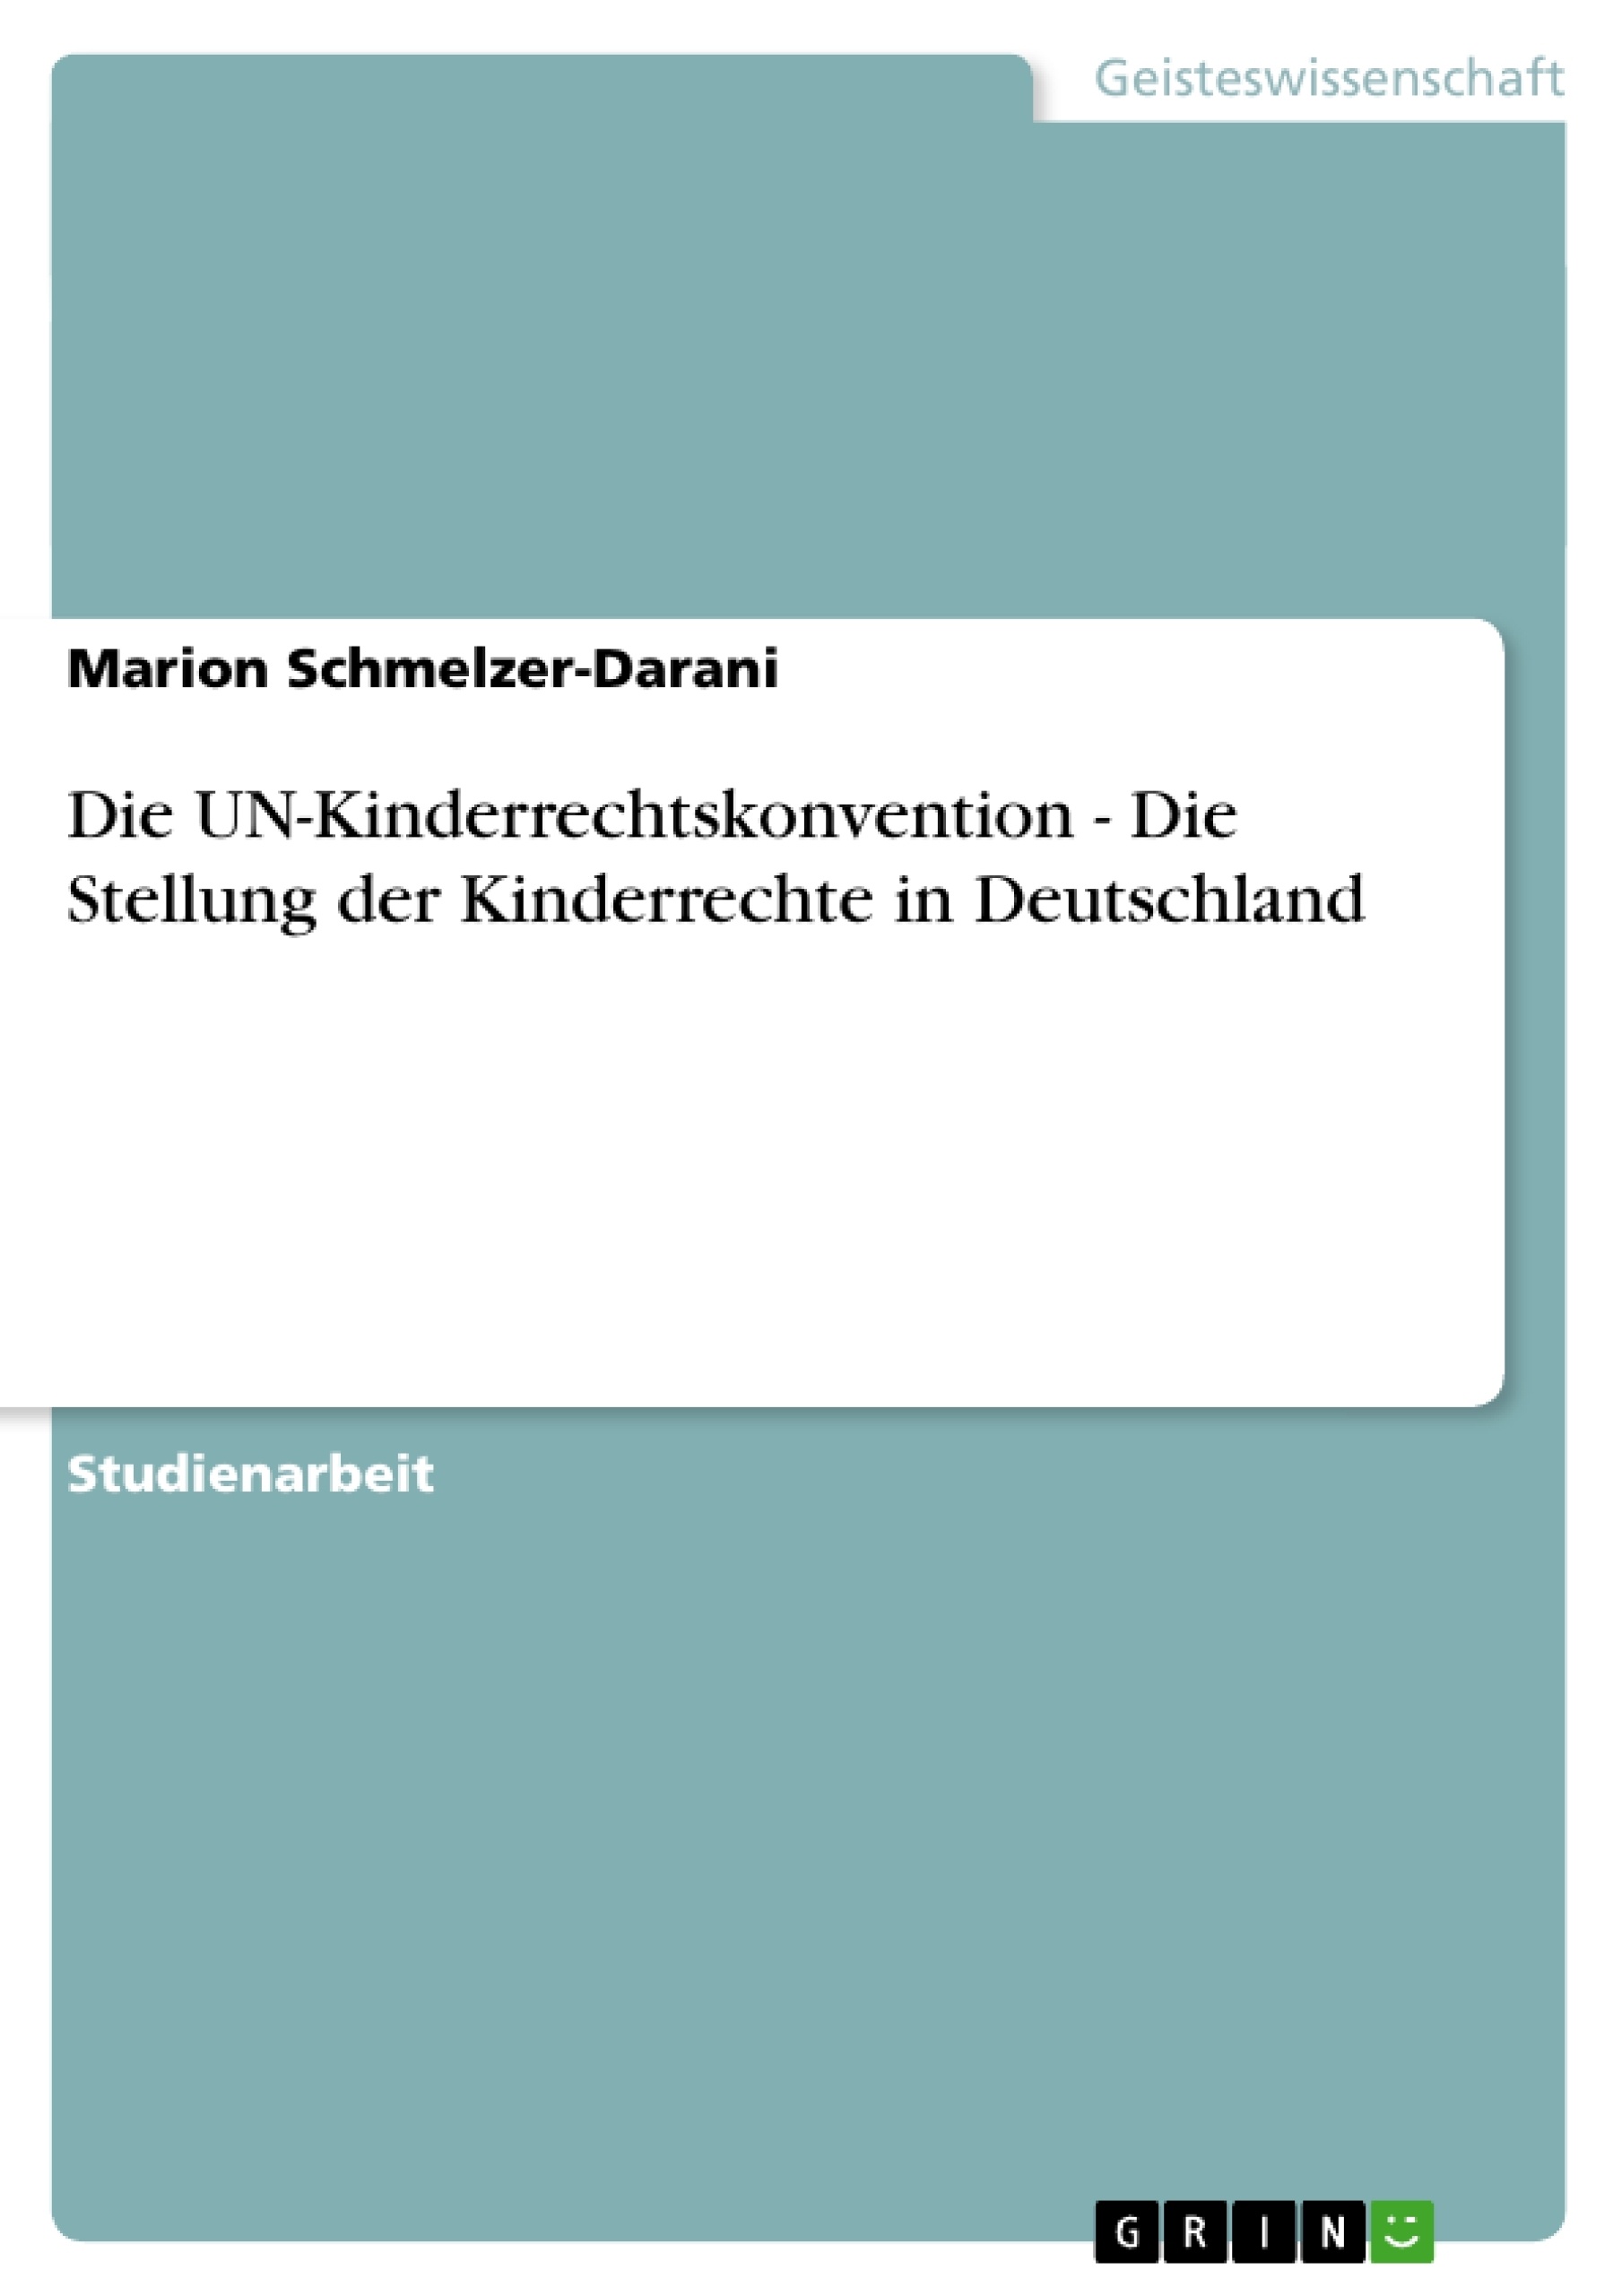 Título: Die UN-Kinderrechtskonvention - Die Stellung der Kinderrechte in Deutschland